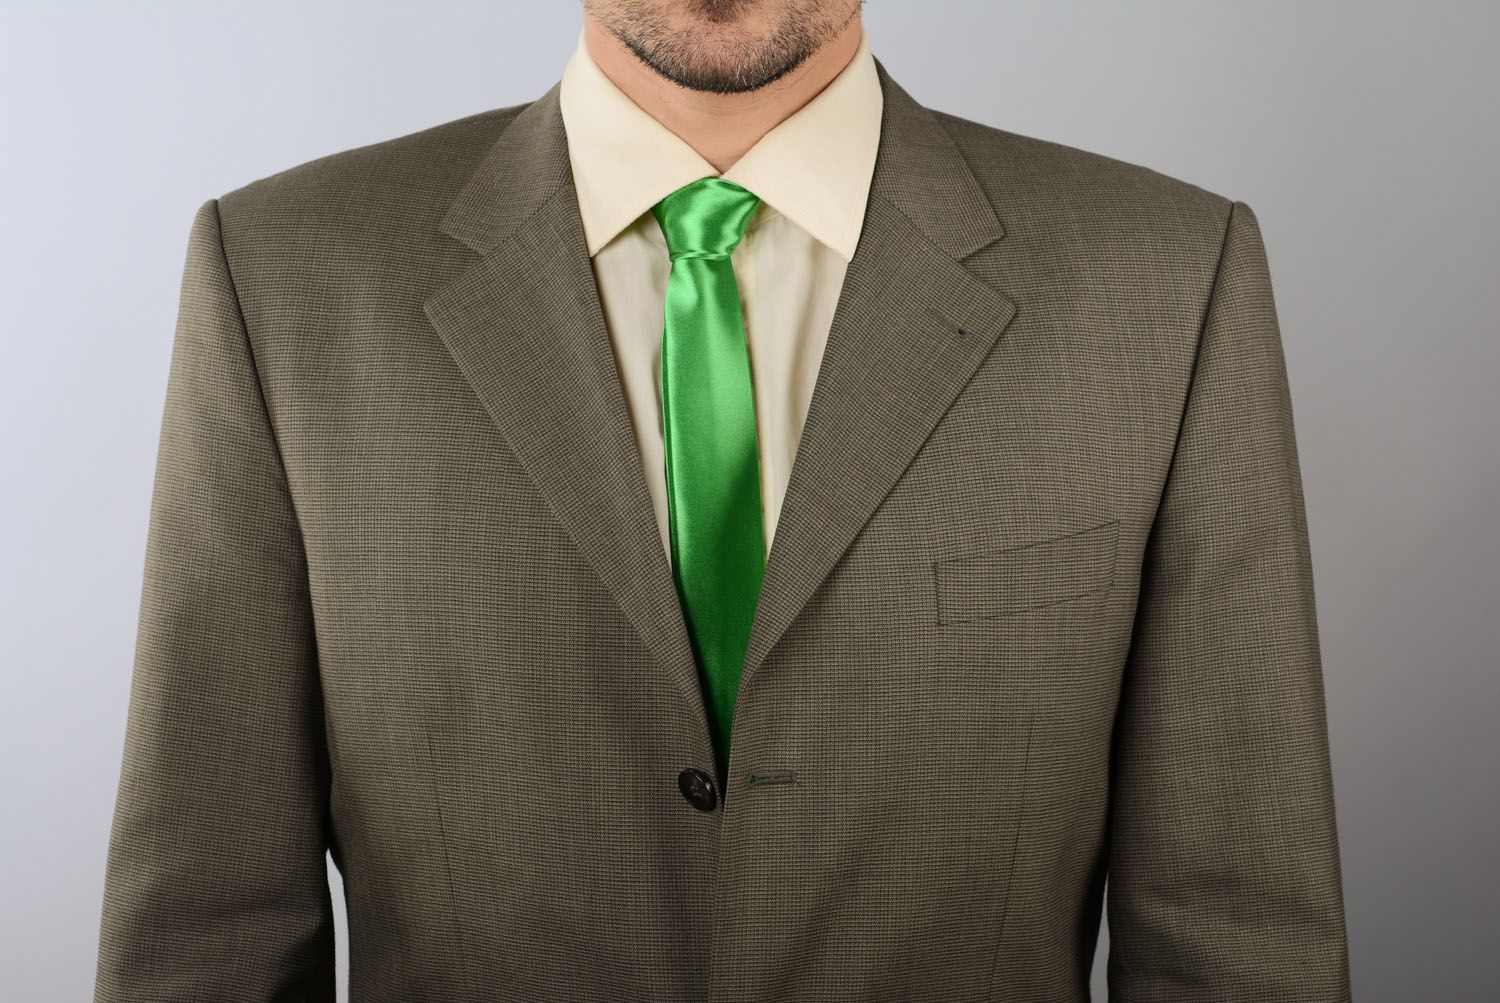 Cravate en satin verte faite main photo 4